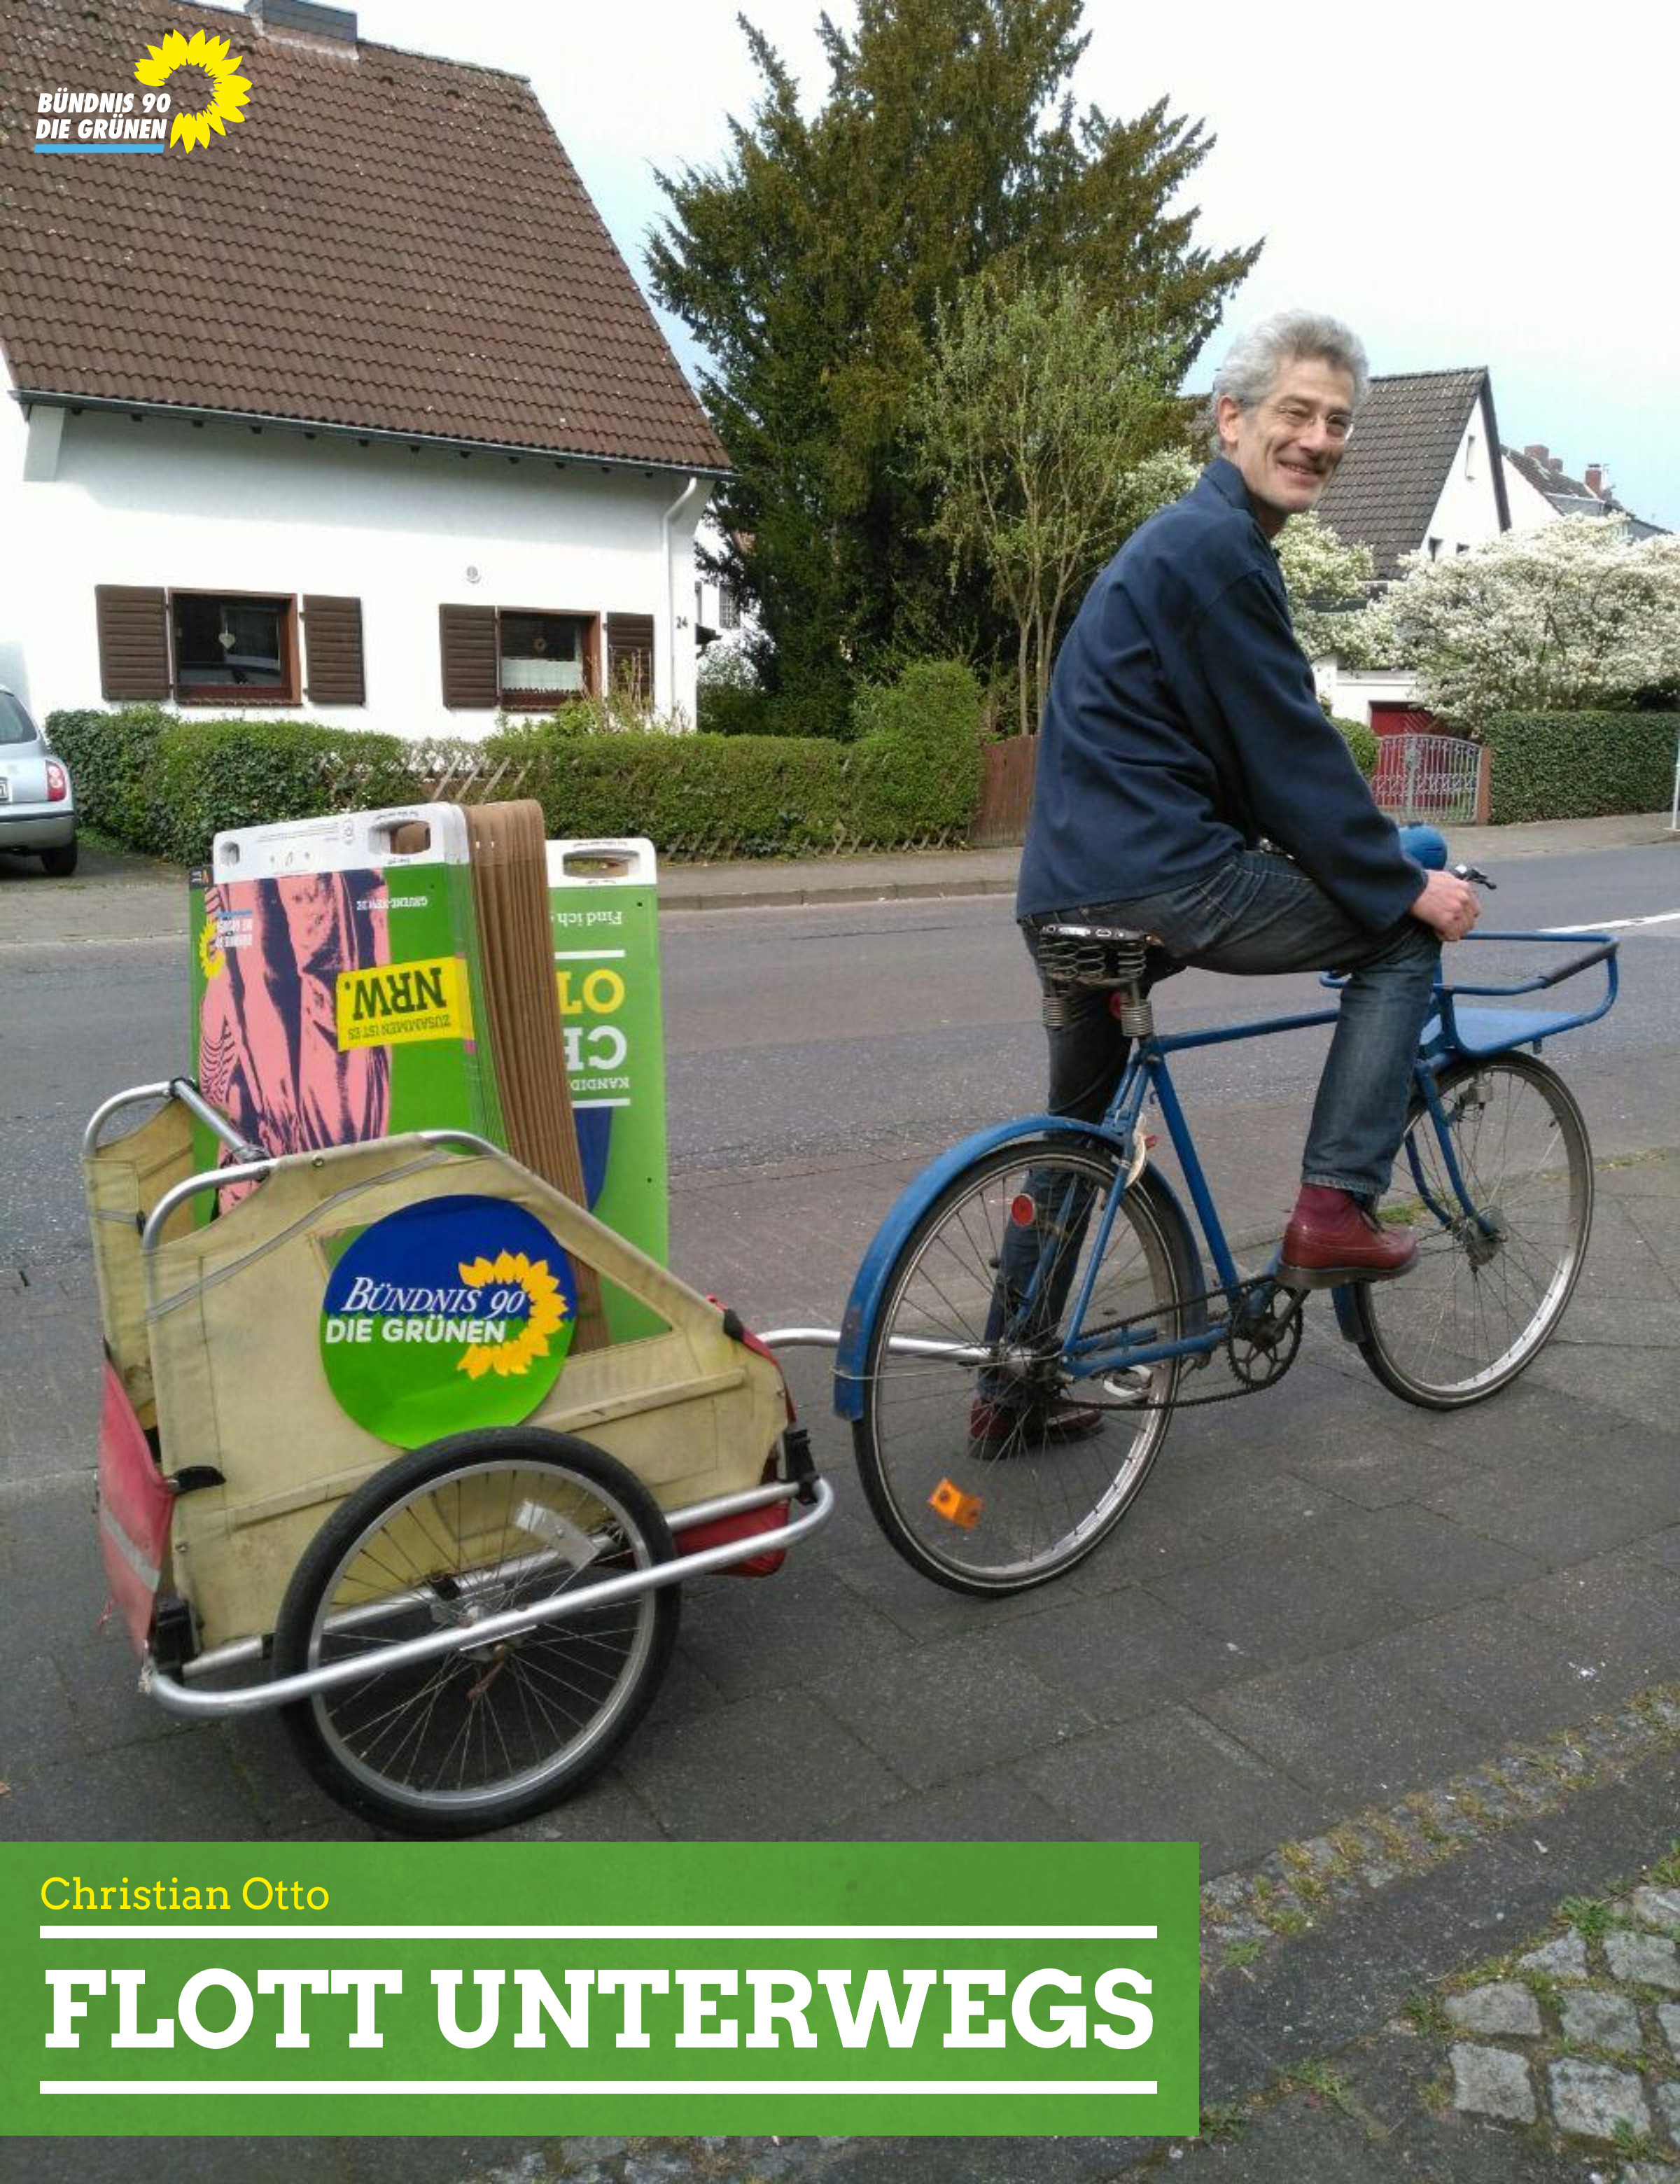 Christian Otto, Plakatieren mit dem Fahrrad und Anhänger zur Landtagswahl NRW in Ratingen